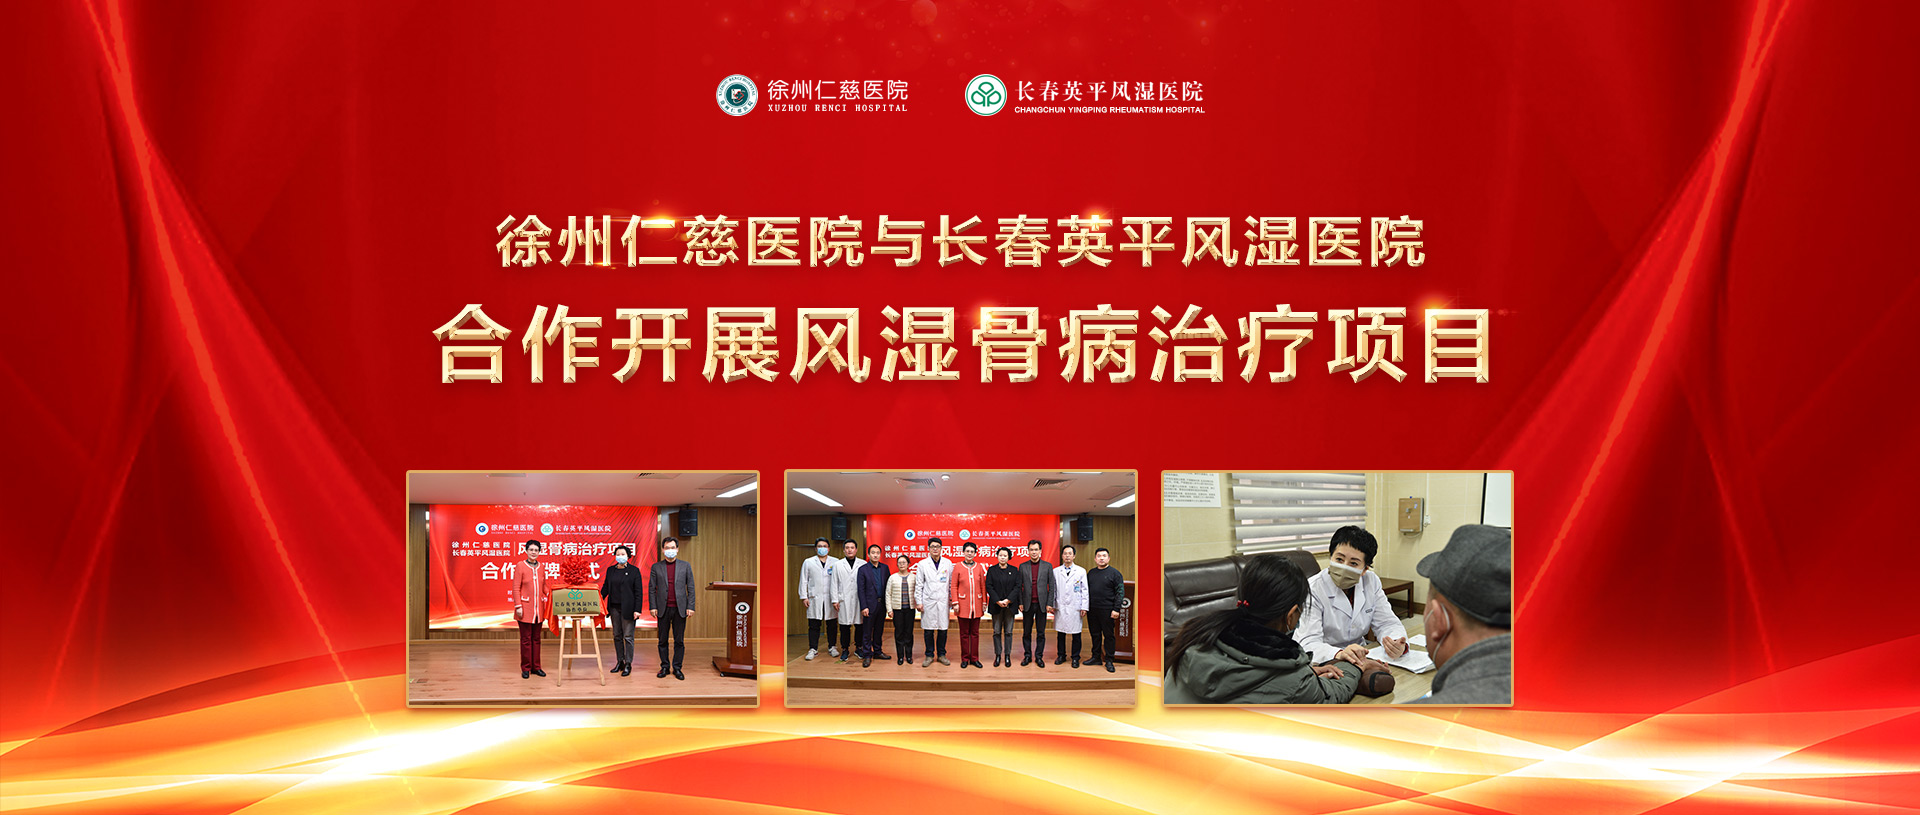 徐州仁慈医院与长春英平风湿医院合作开展风湿骨病治疗项目